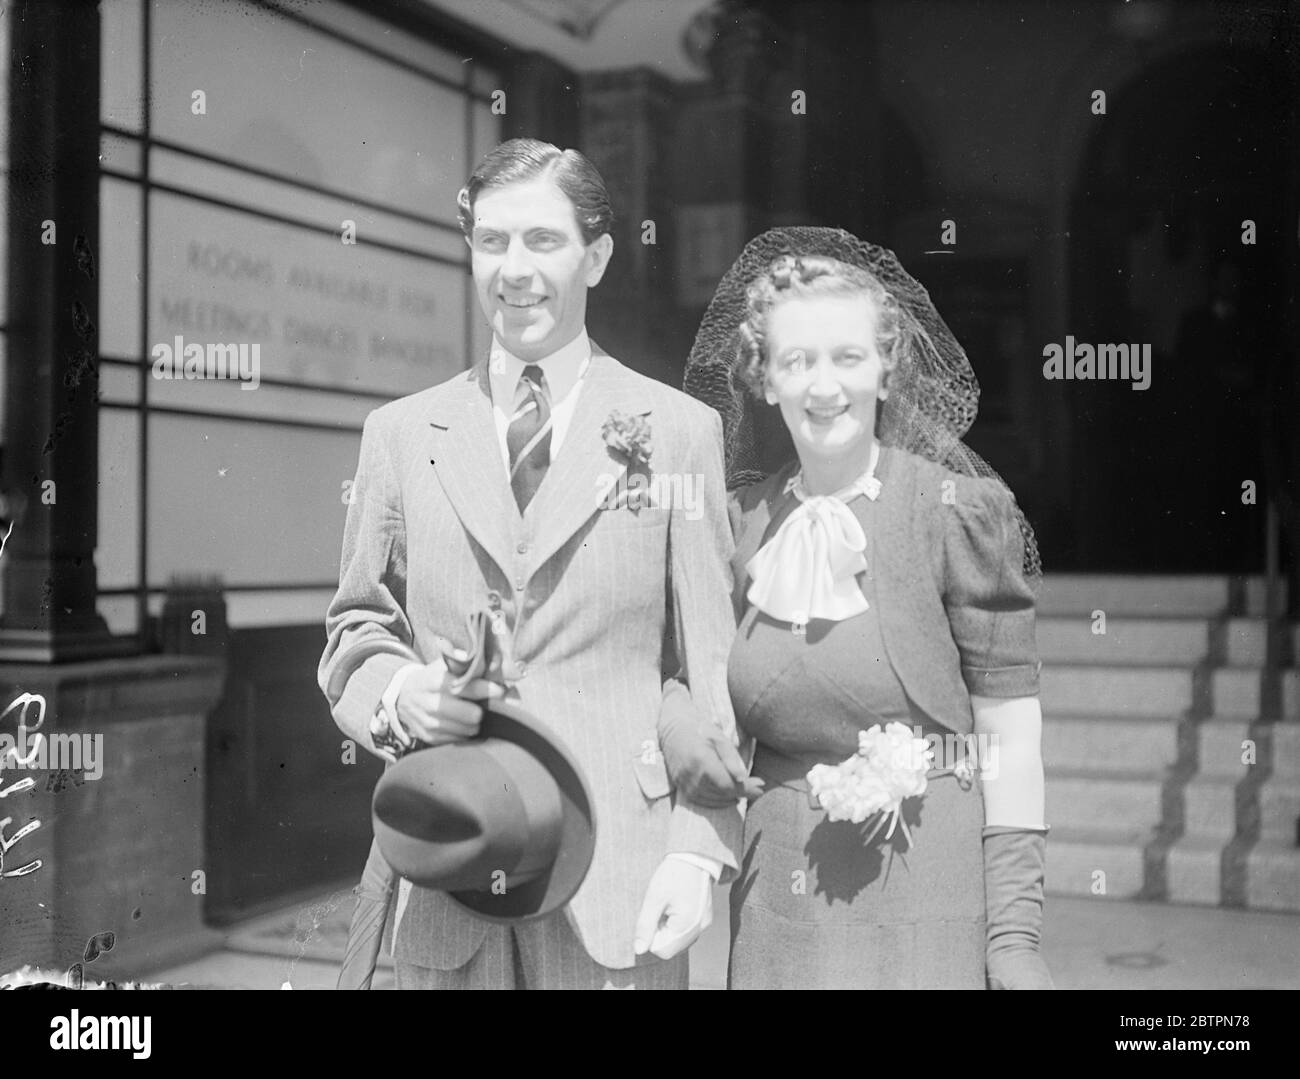 Casado en Londres. El Capitán A. S. T. Godfrey, Ingenieros reales, y la Srta. Muriel Abrahams, hija del mayor y la Sra. A. C. Abrahams, que se casaron en el Registro de Caxon Hall durante la fiebre de bodas en Londres que coincidió con la boda del duque y la duquesa de Windsor. Fotos: capitán A. S. T. Godfrey y su novia saliendo de Caxon Hall después de su matrimonio. 3 de junio de 1937 Foto de stock